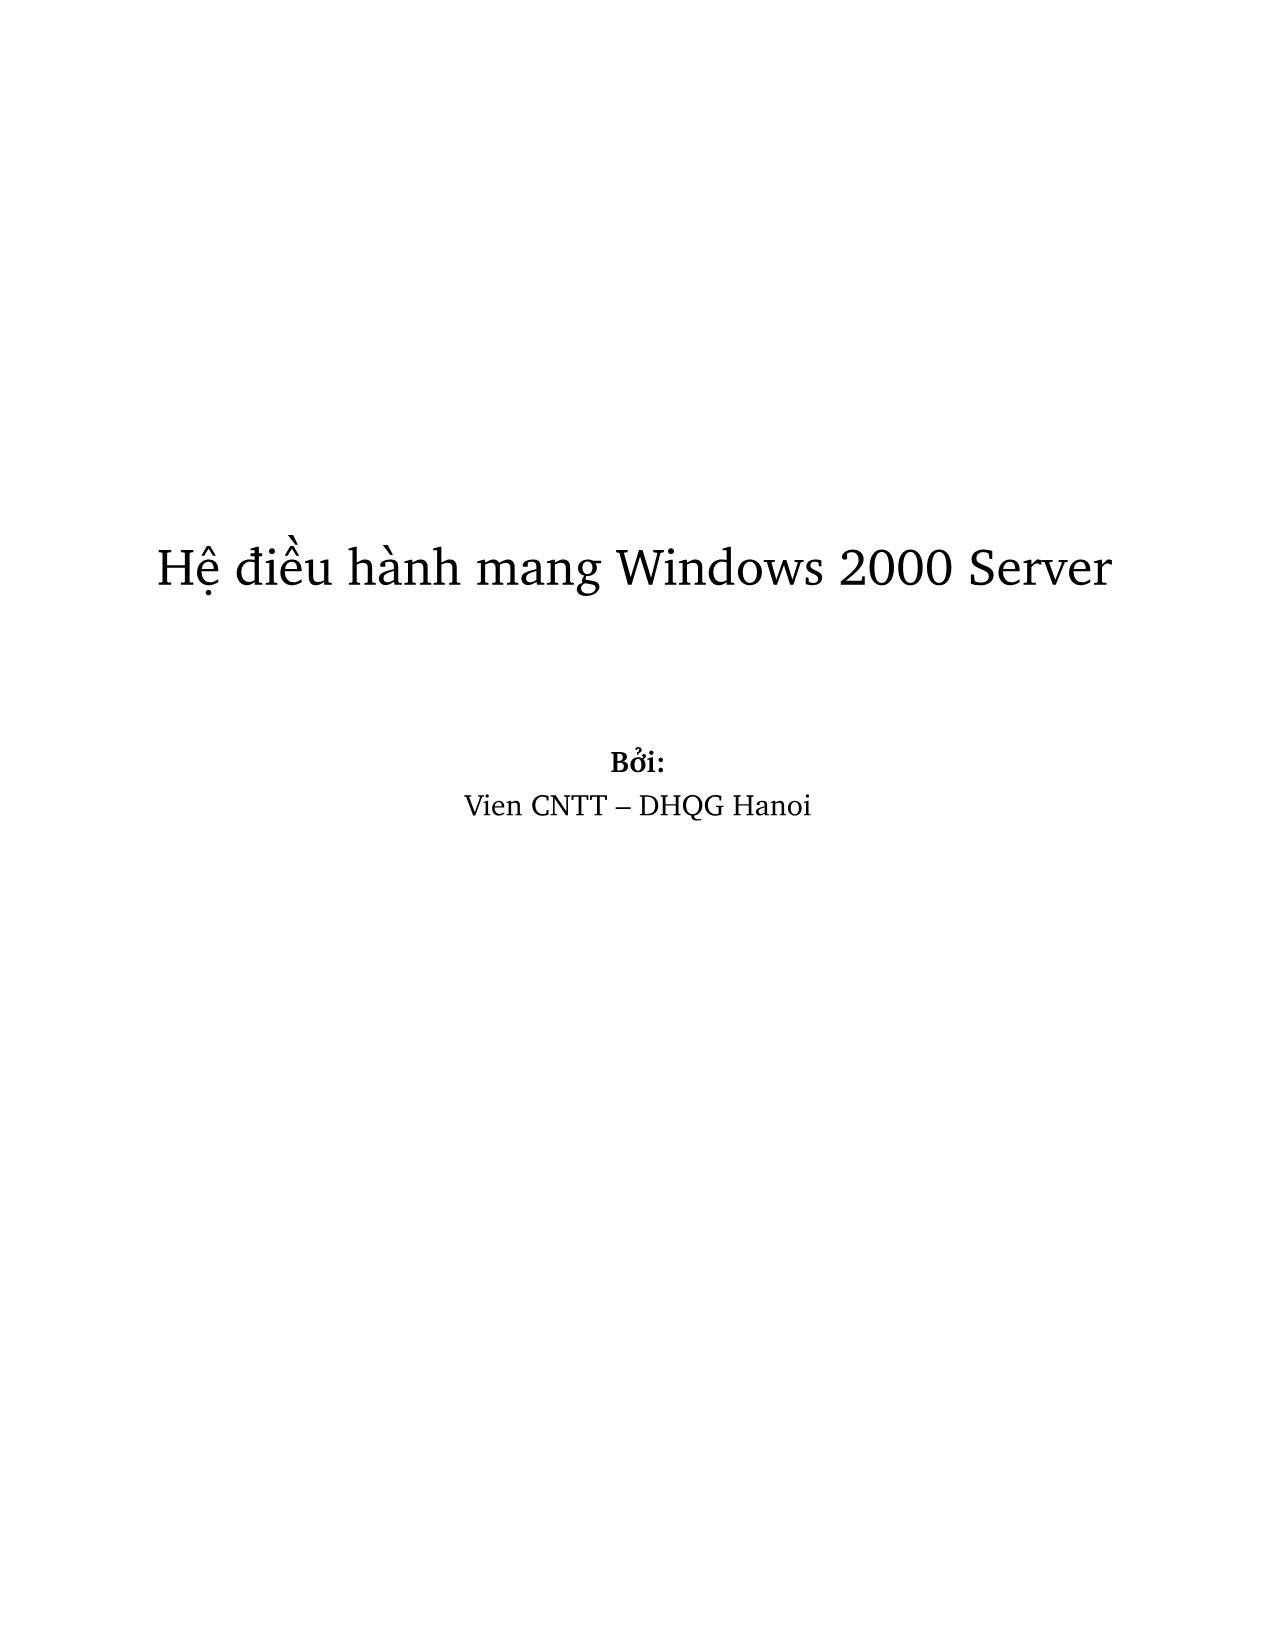 Giáo trình Hệ điều hành mang Windows 2000 Server (Phần 1) trang 1